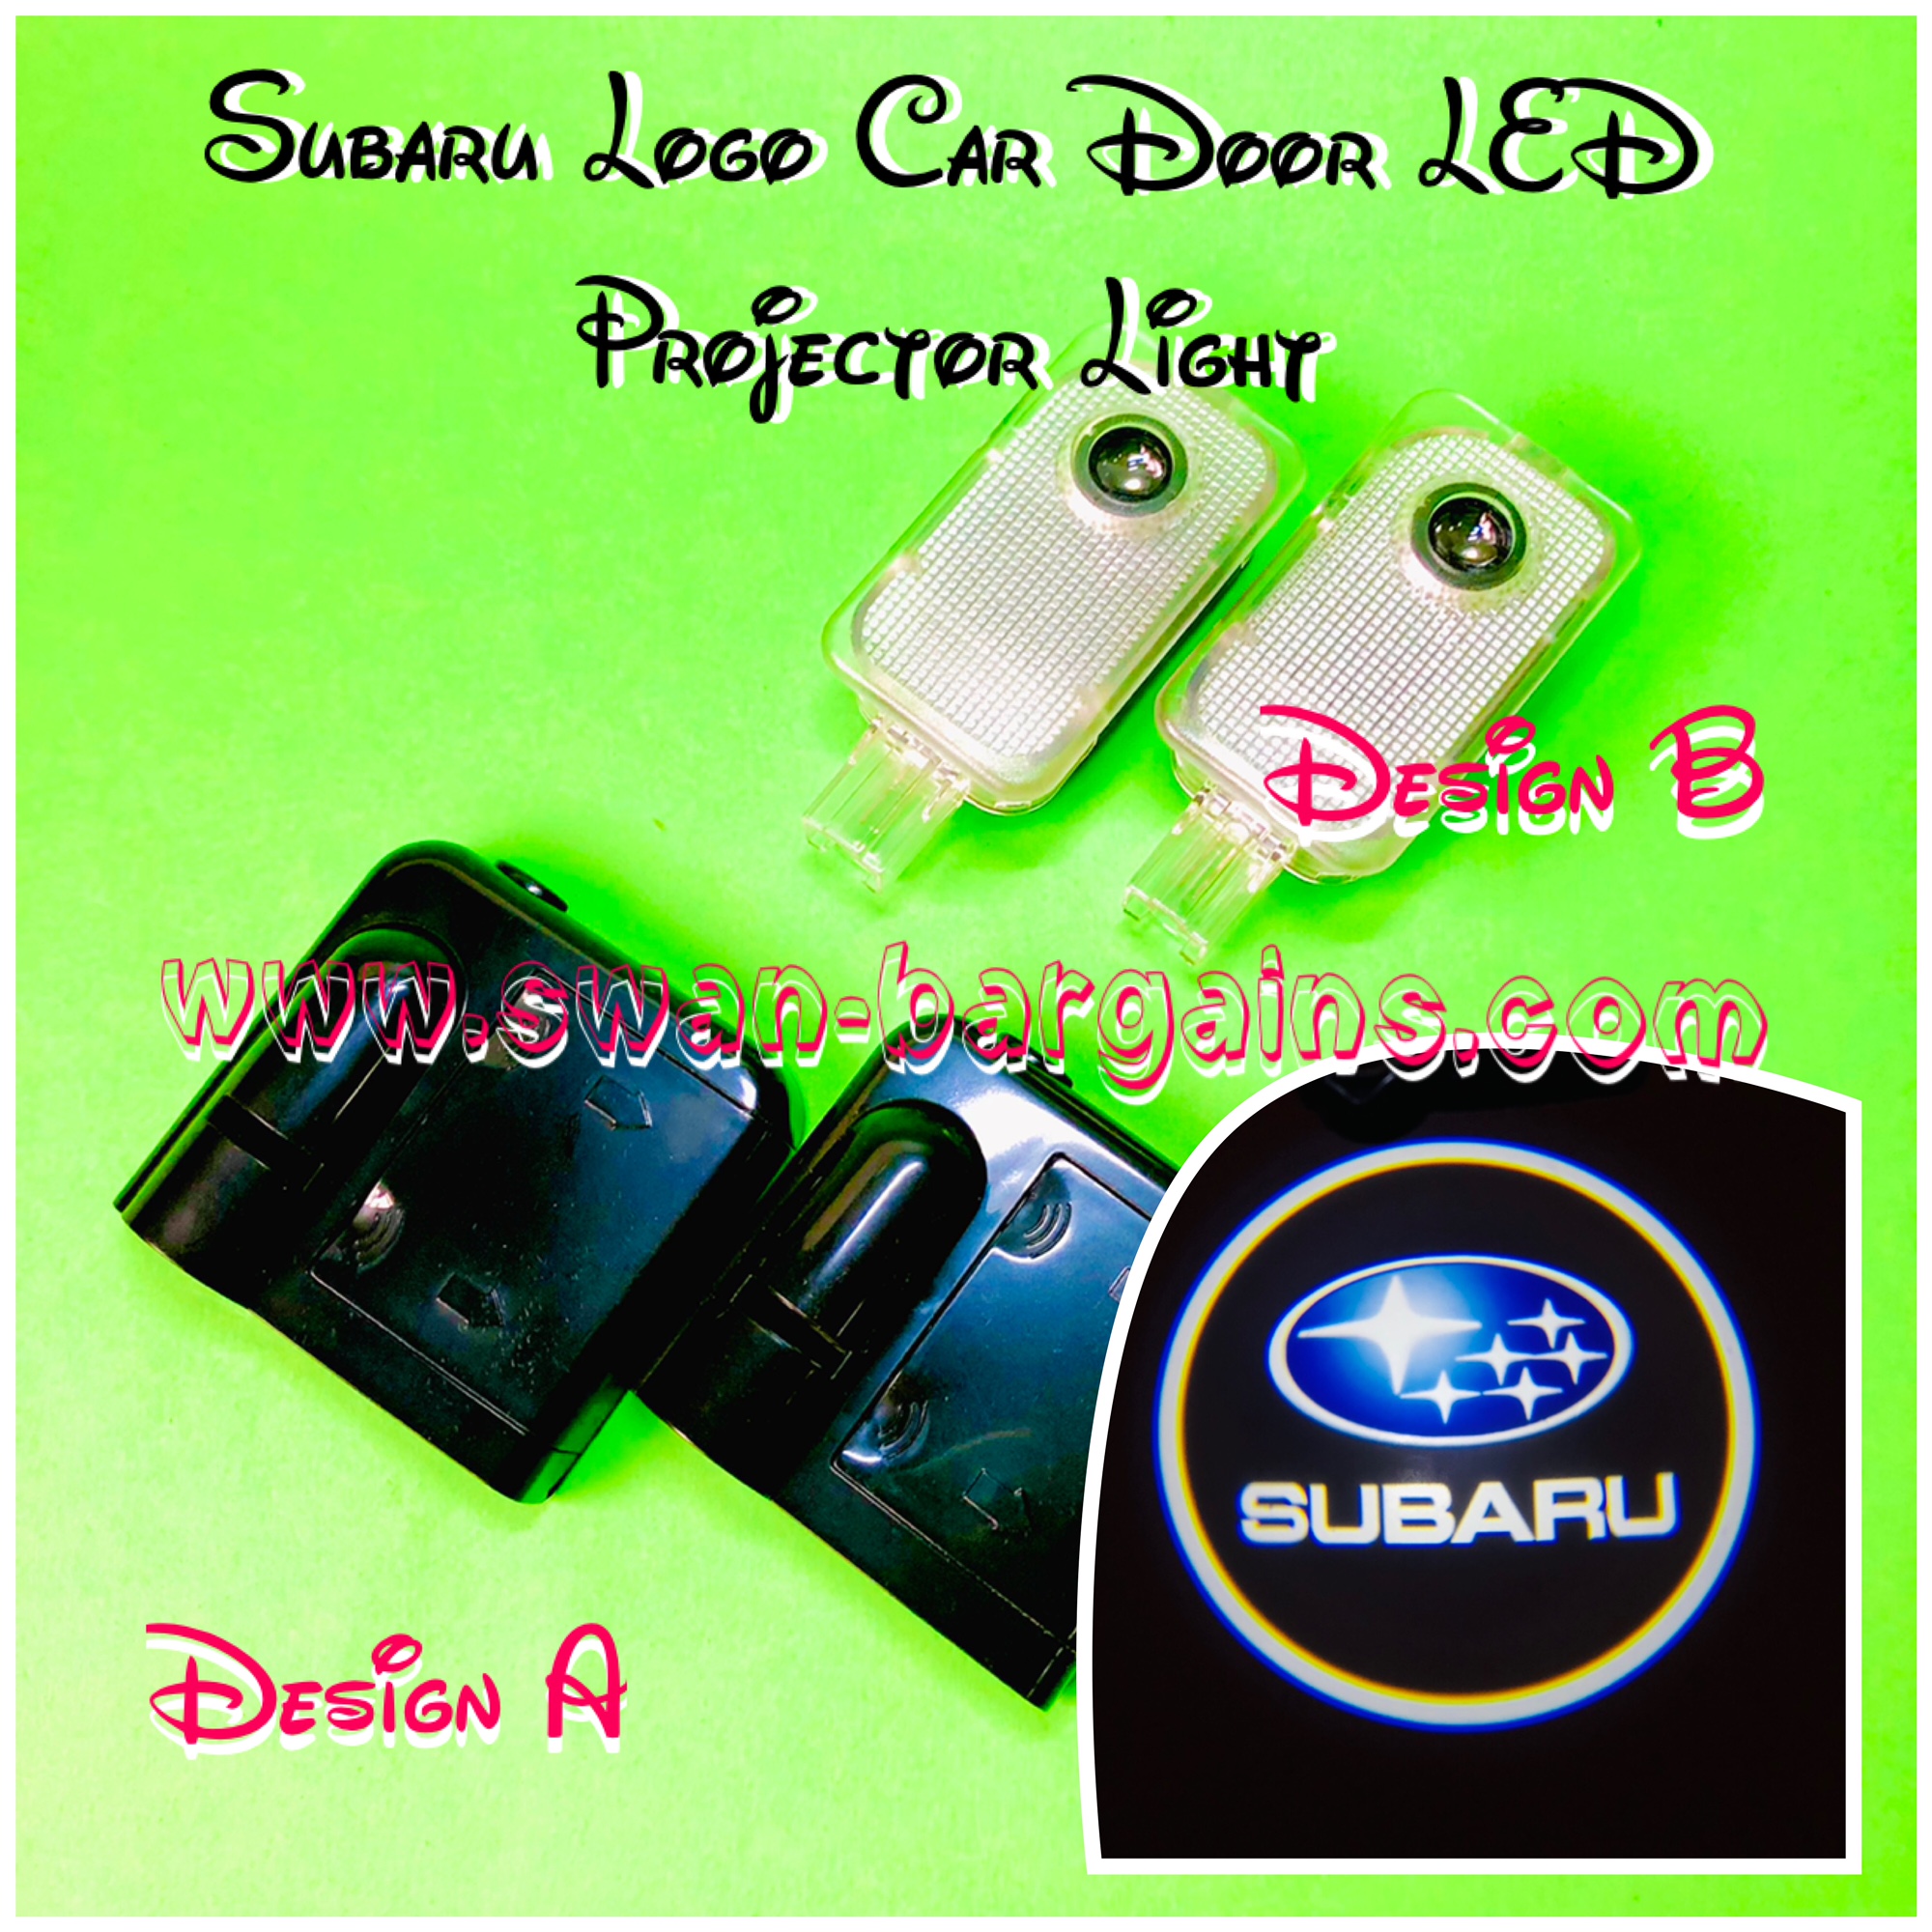 Subaru Car Door Greetings Projector Lamp Singapore